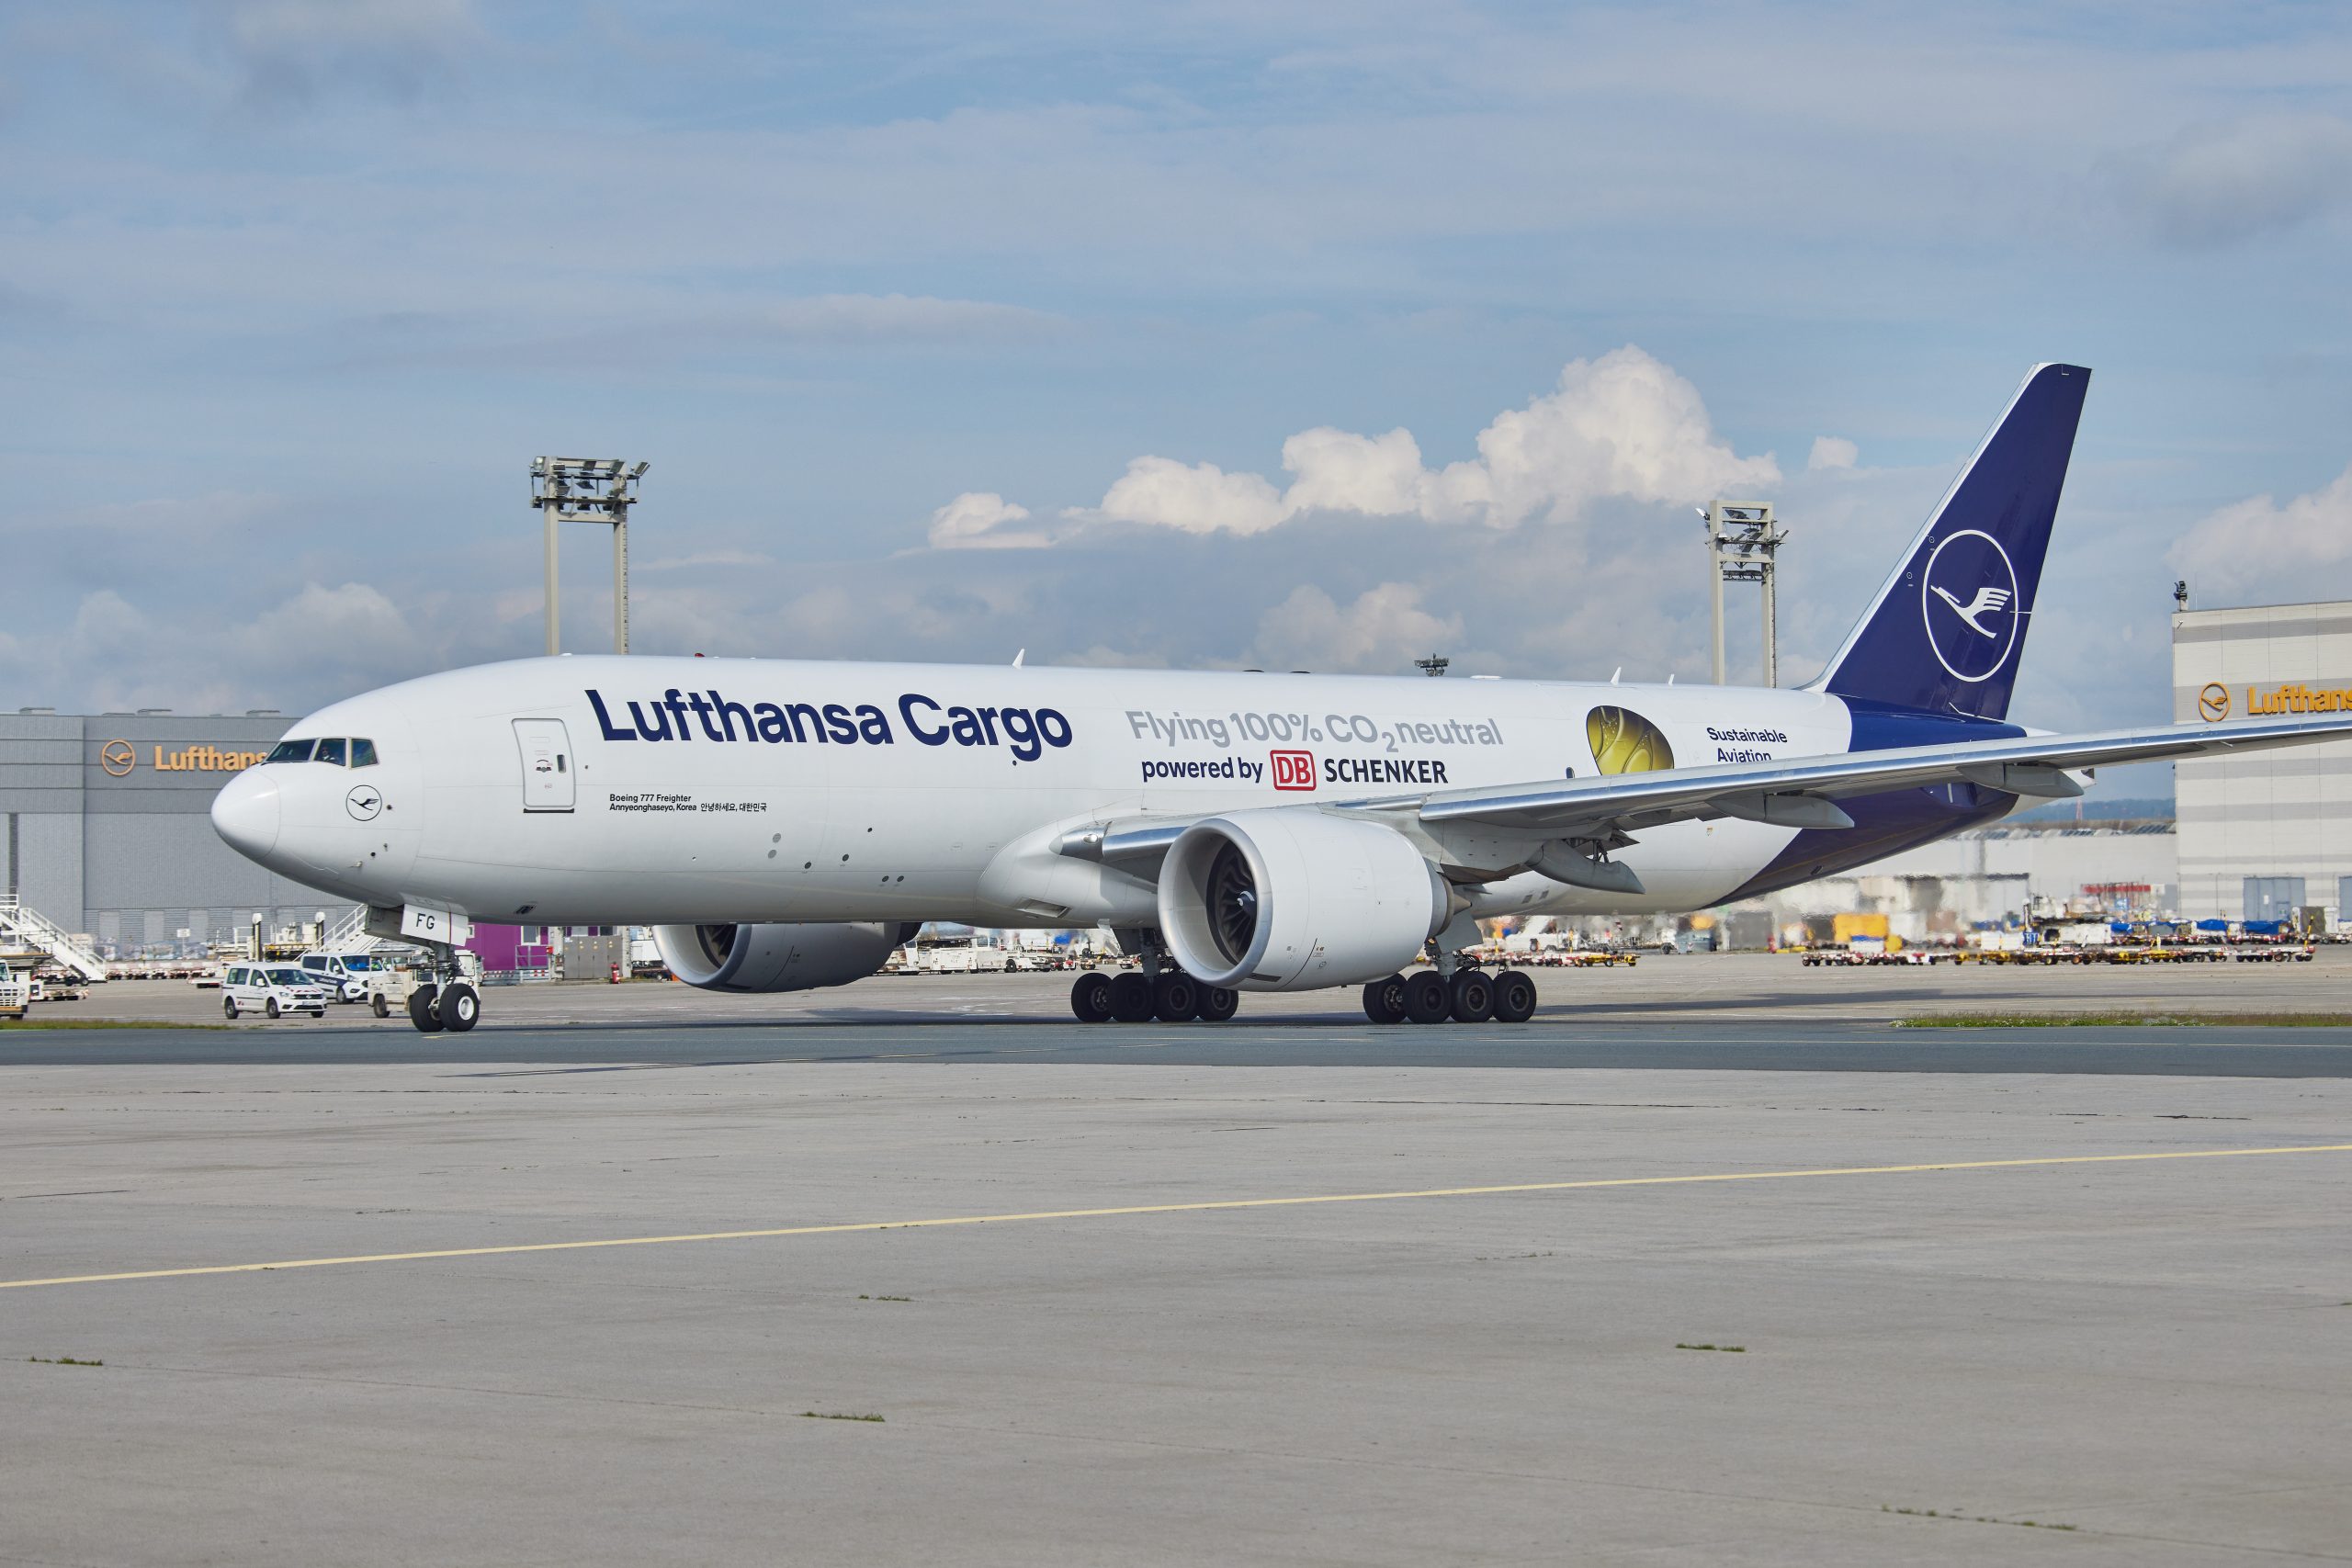 Lufthansa Cargo - samolot zatankowany paliwem neutralnym pod względem emisji CO2